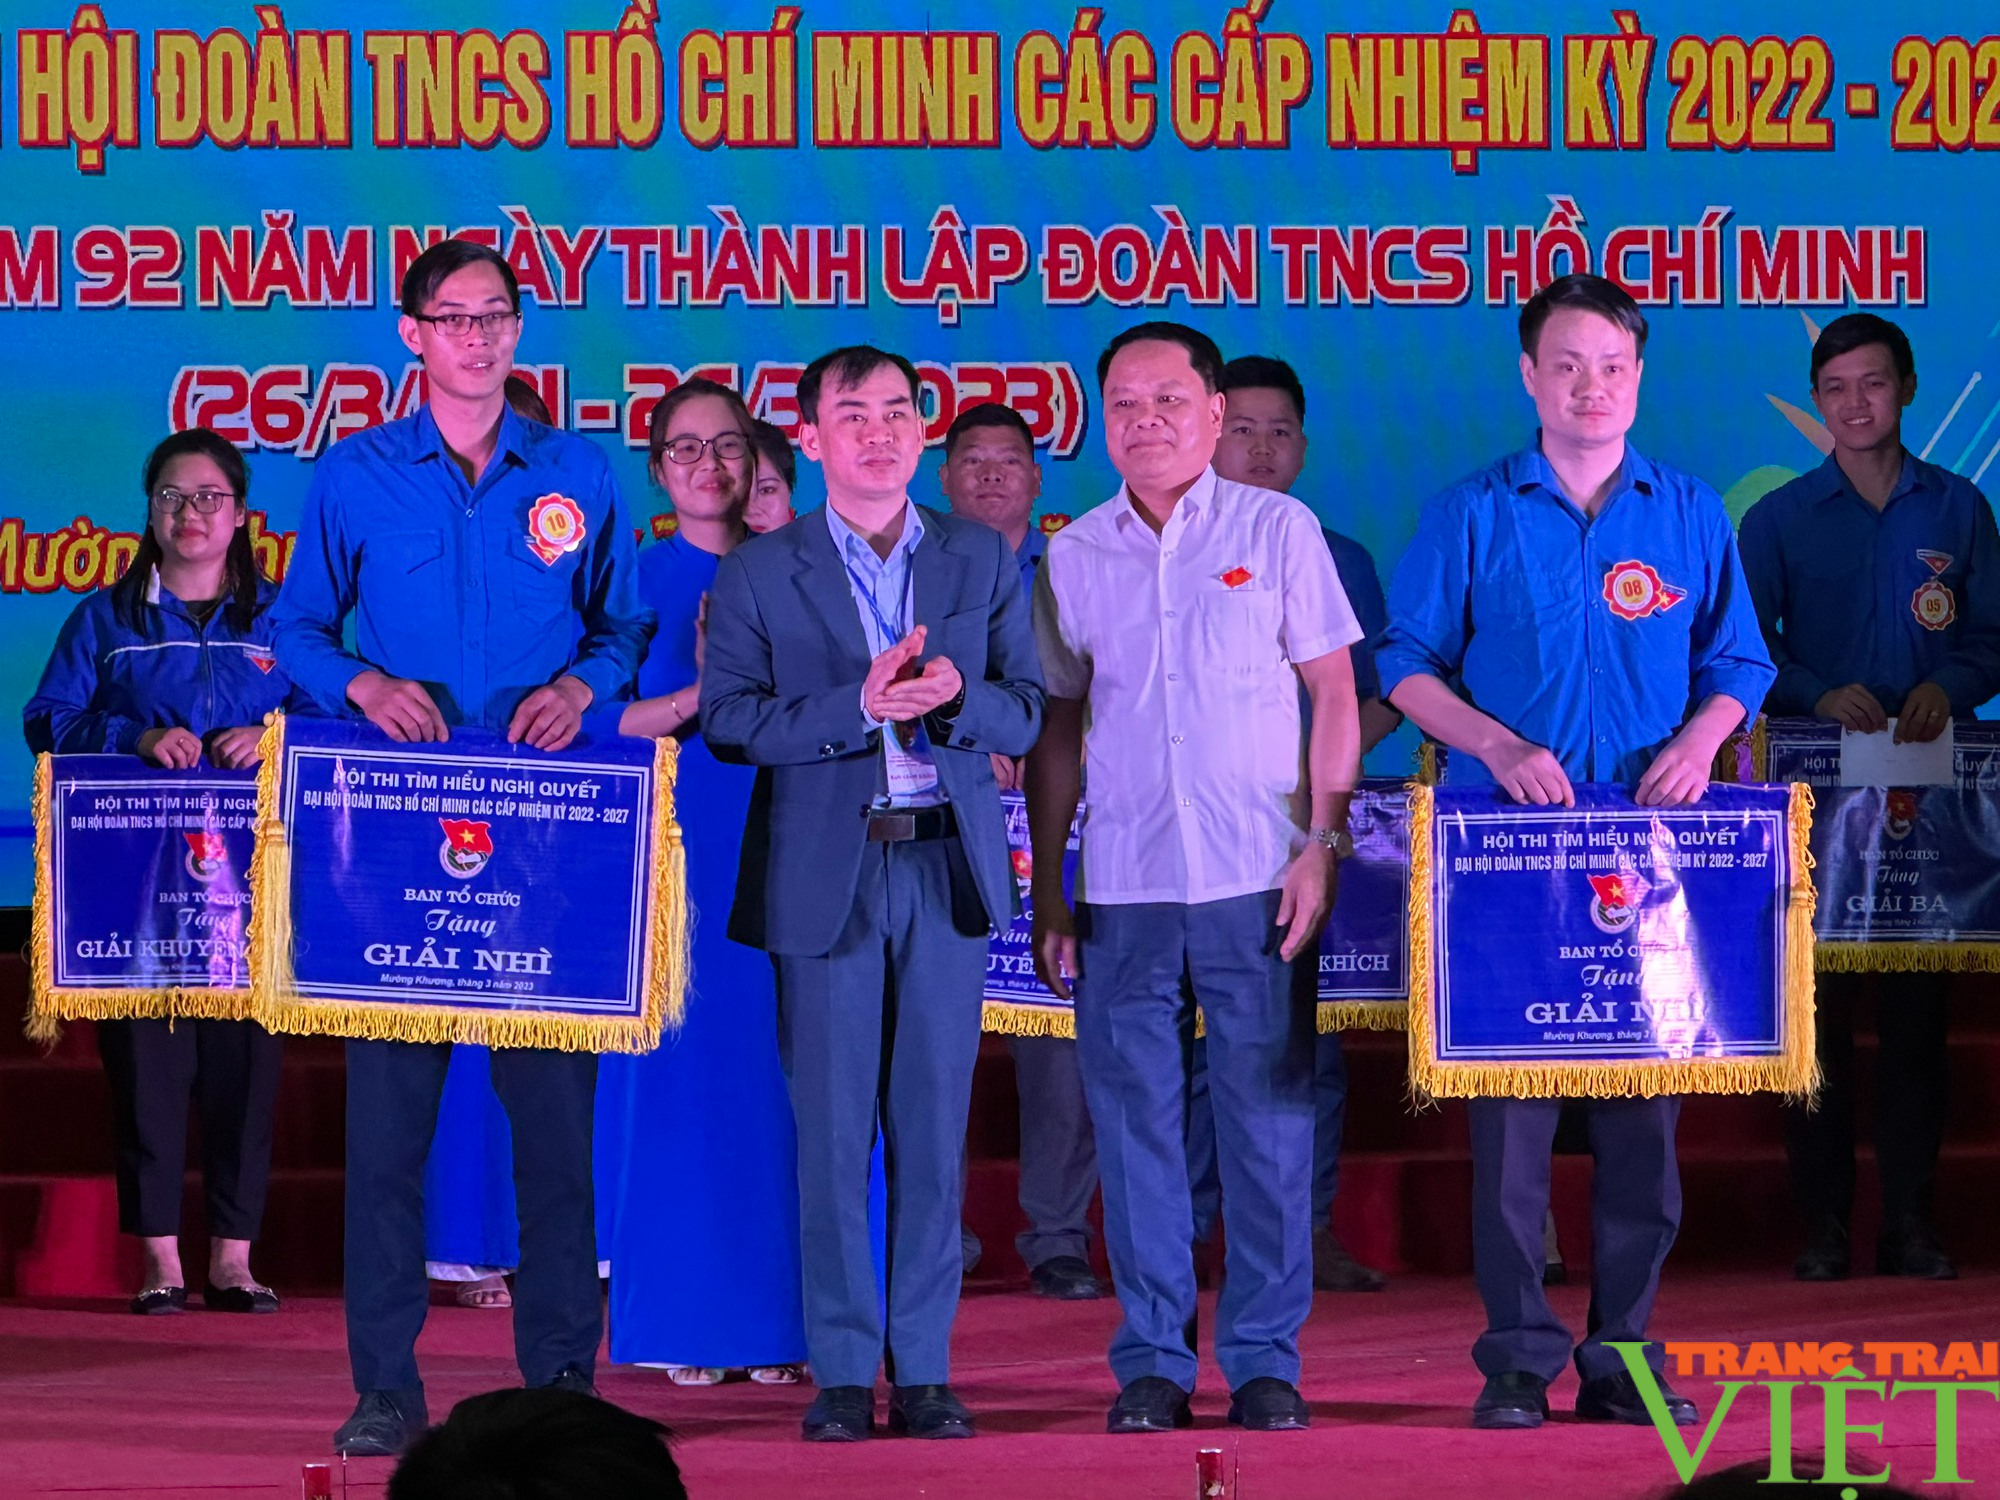   Huyện biên giới Lào Cai: Hội thi tìm hiểu Nghị quyết Đại hội Đoàn TNCS Hồ Chí Minh các cấp - Ảnh 3.